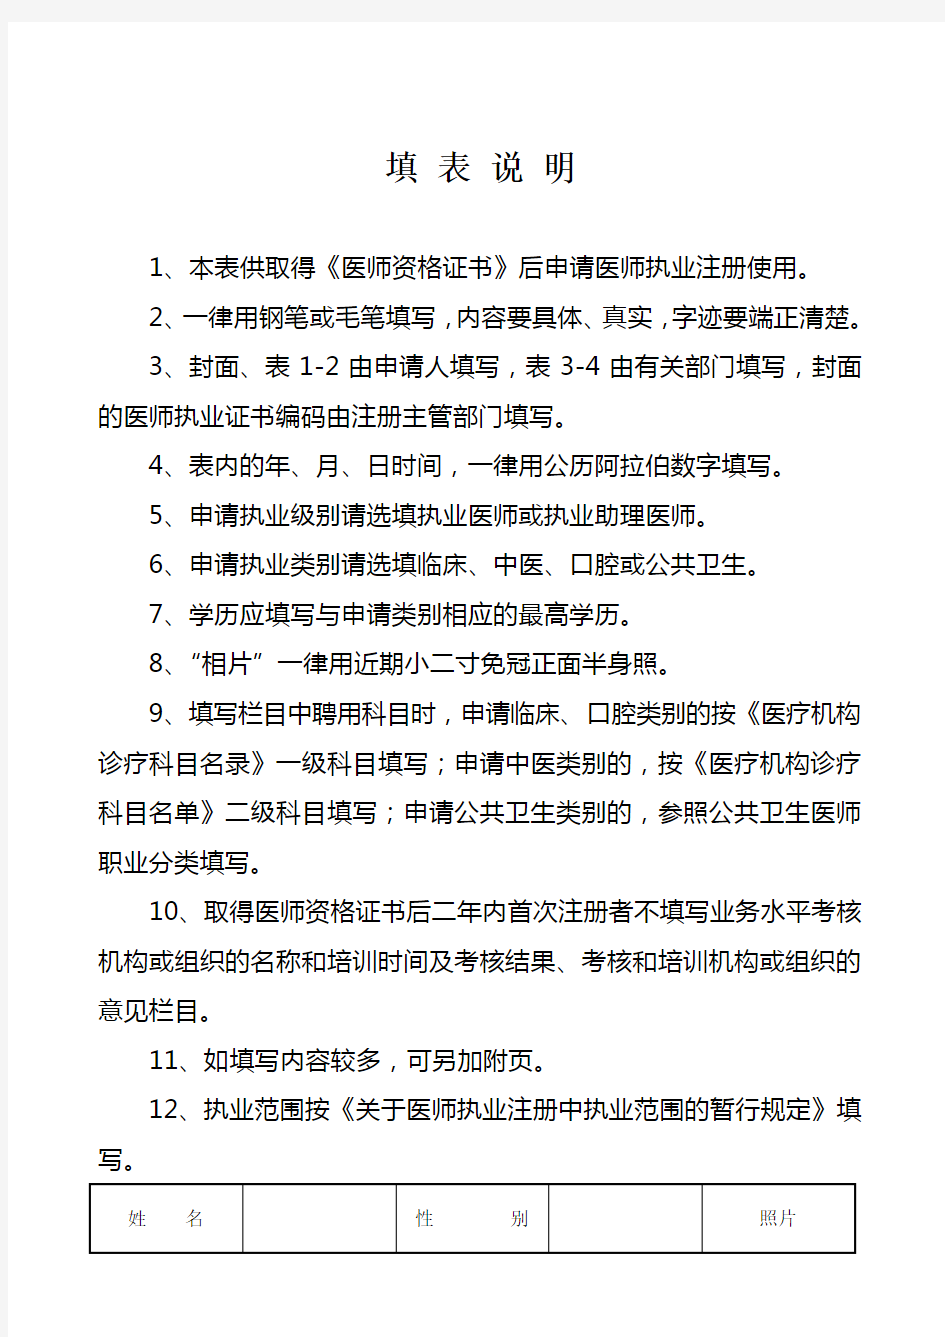 医师执业注册申请审核表 - 广东省卫生和计划生育委员会